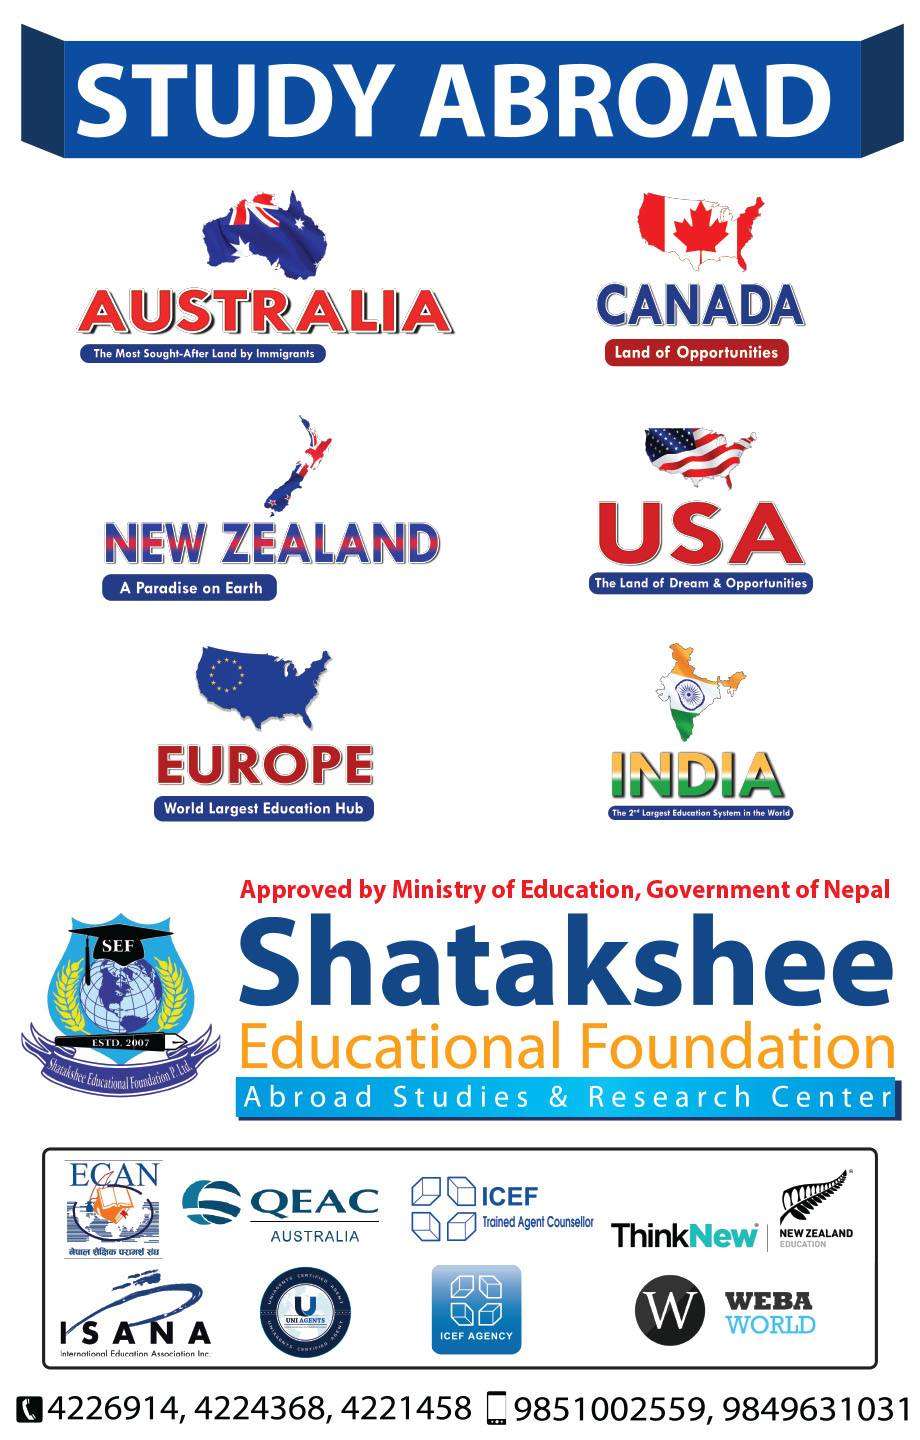 Shatakshee Educational Foundation